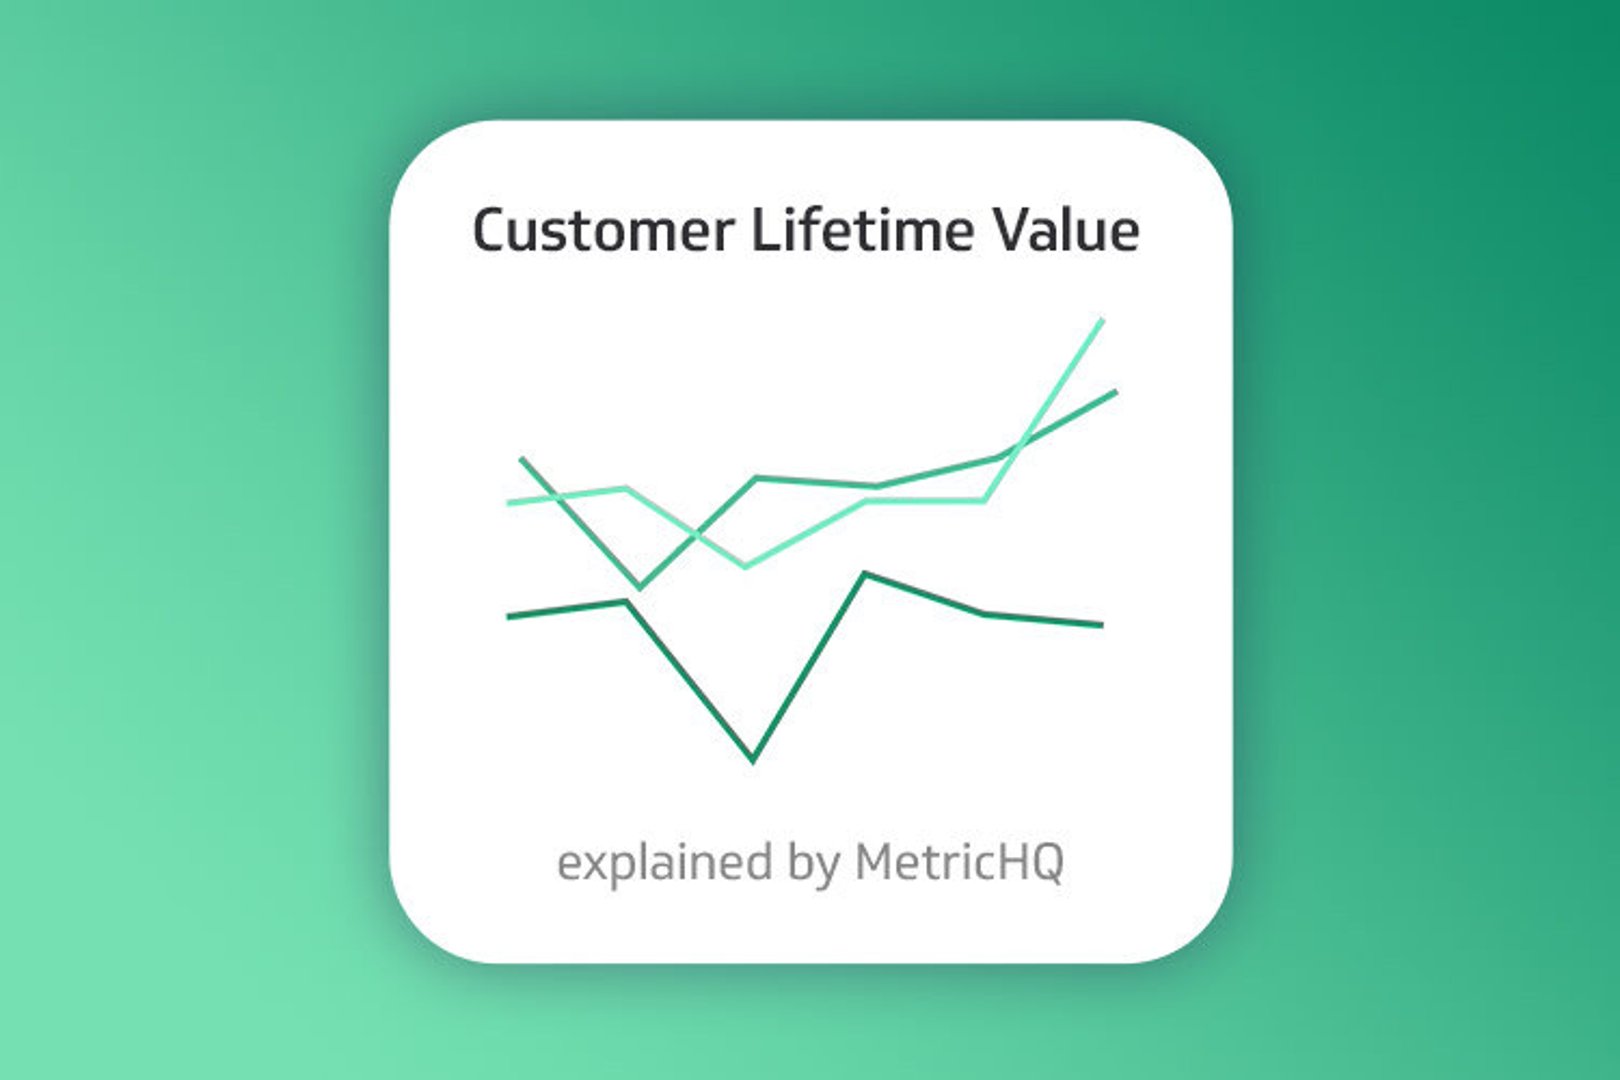 Top Sales Kp Is   Customer Lifetime Value on Metric Hq